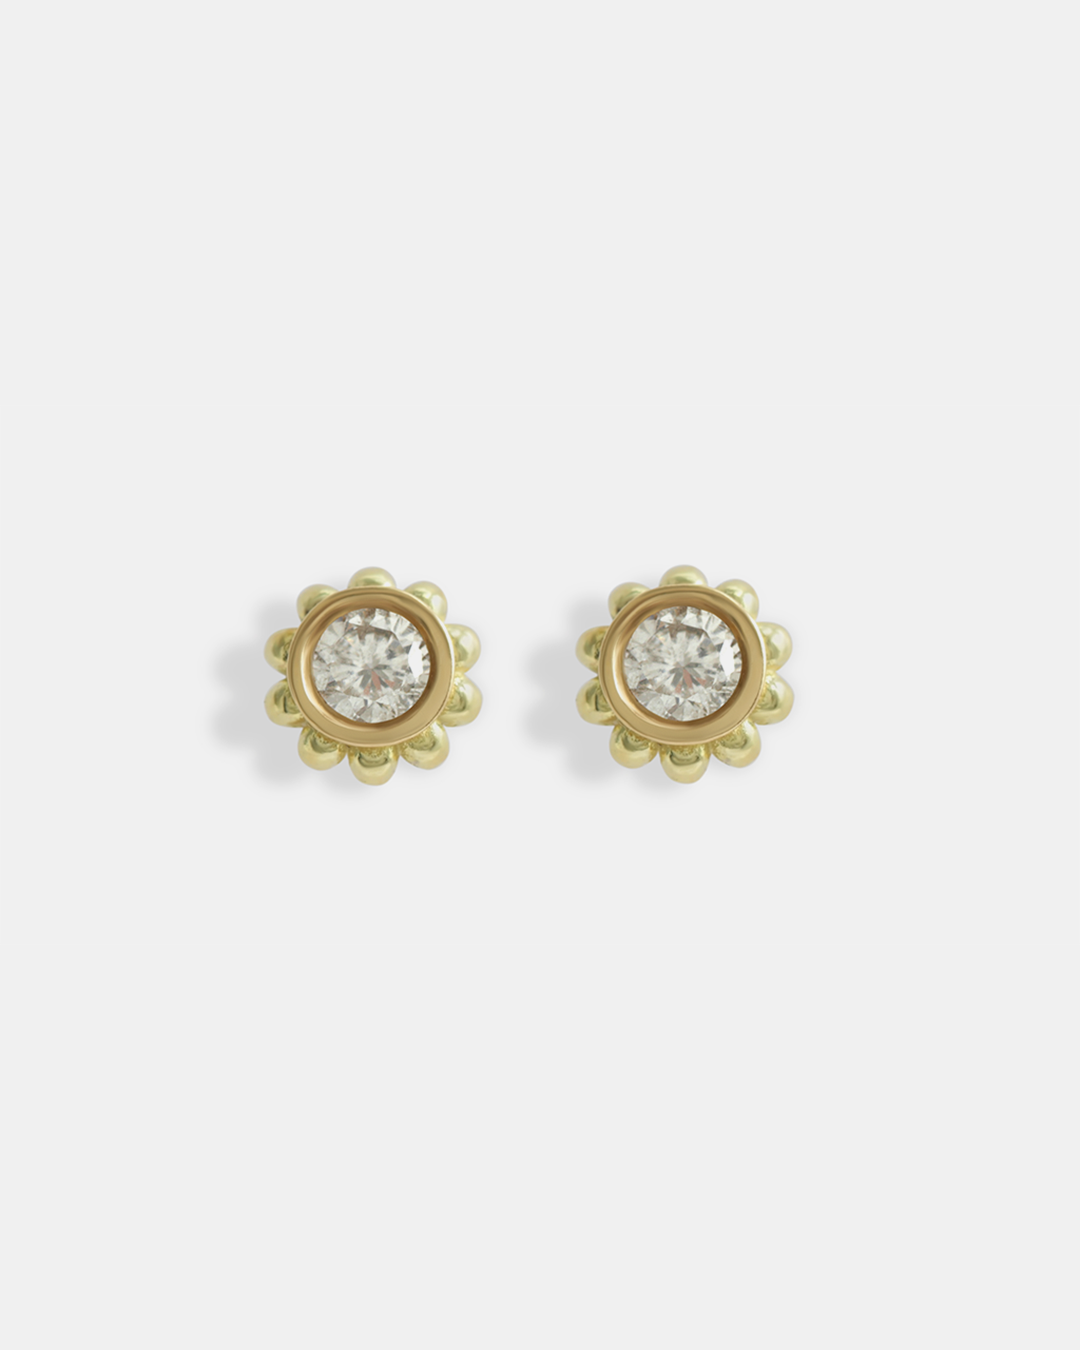 Skull Stud Earrings / White Diamonds By fitzgerald jewelry